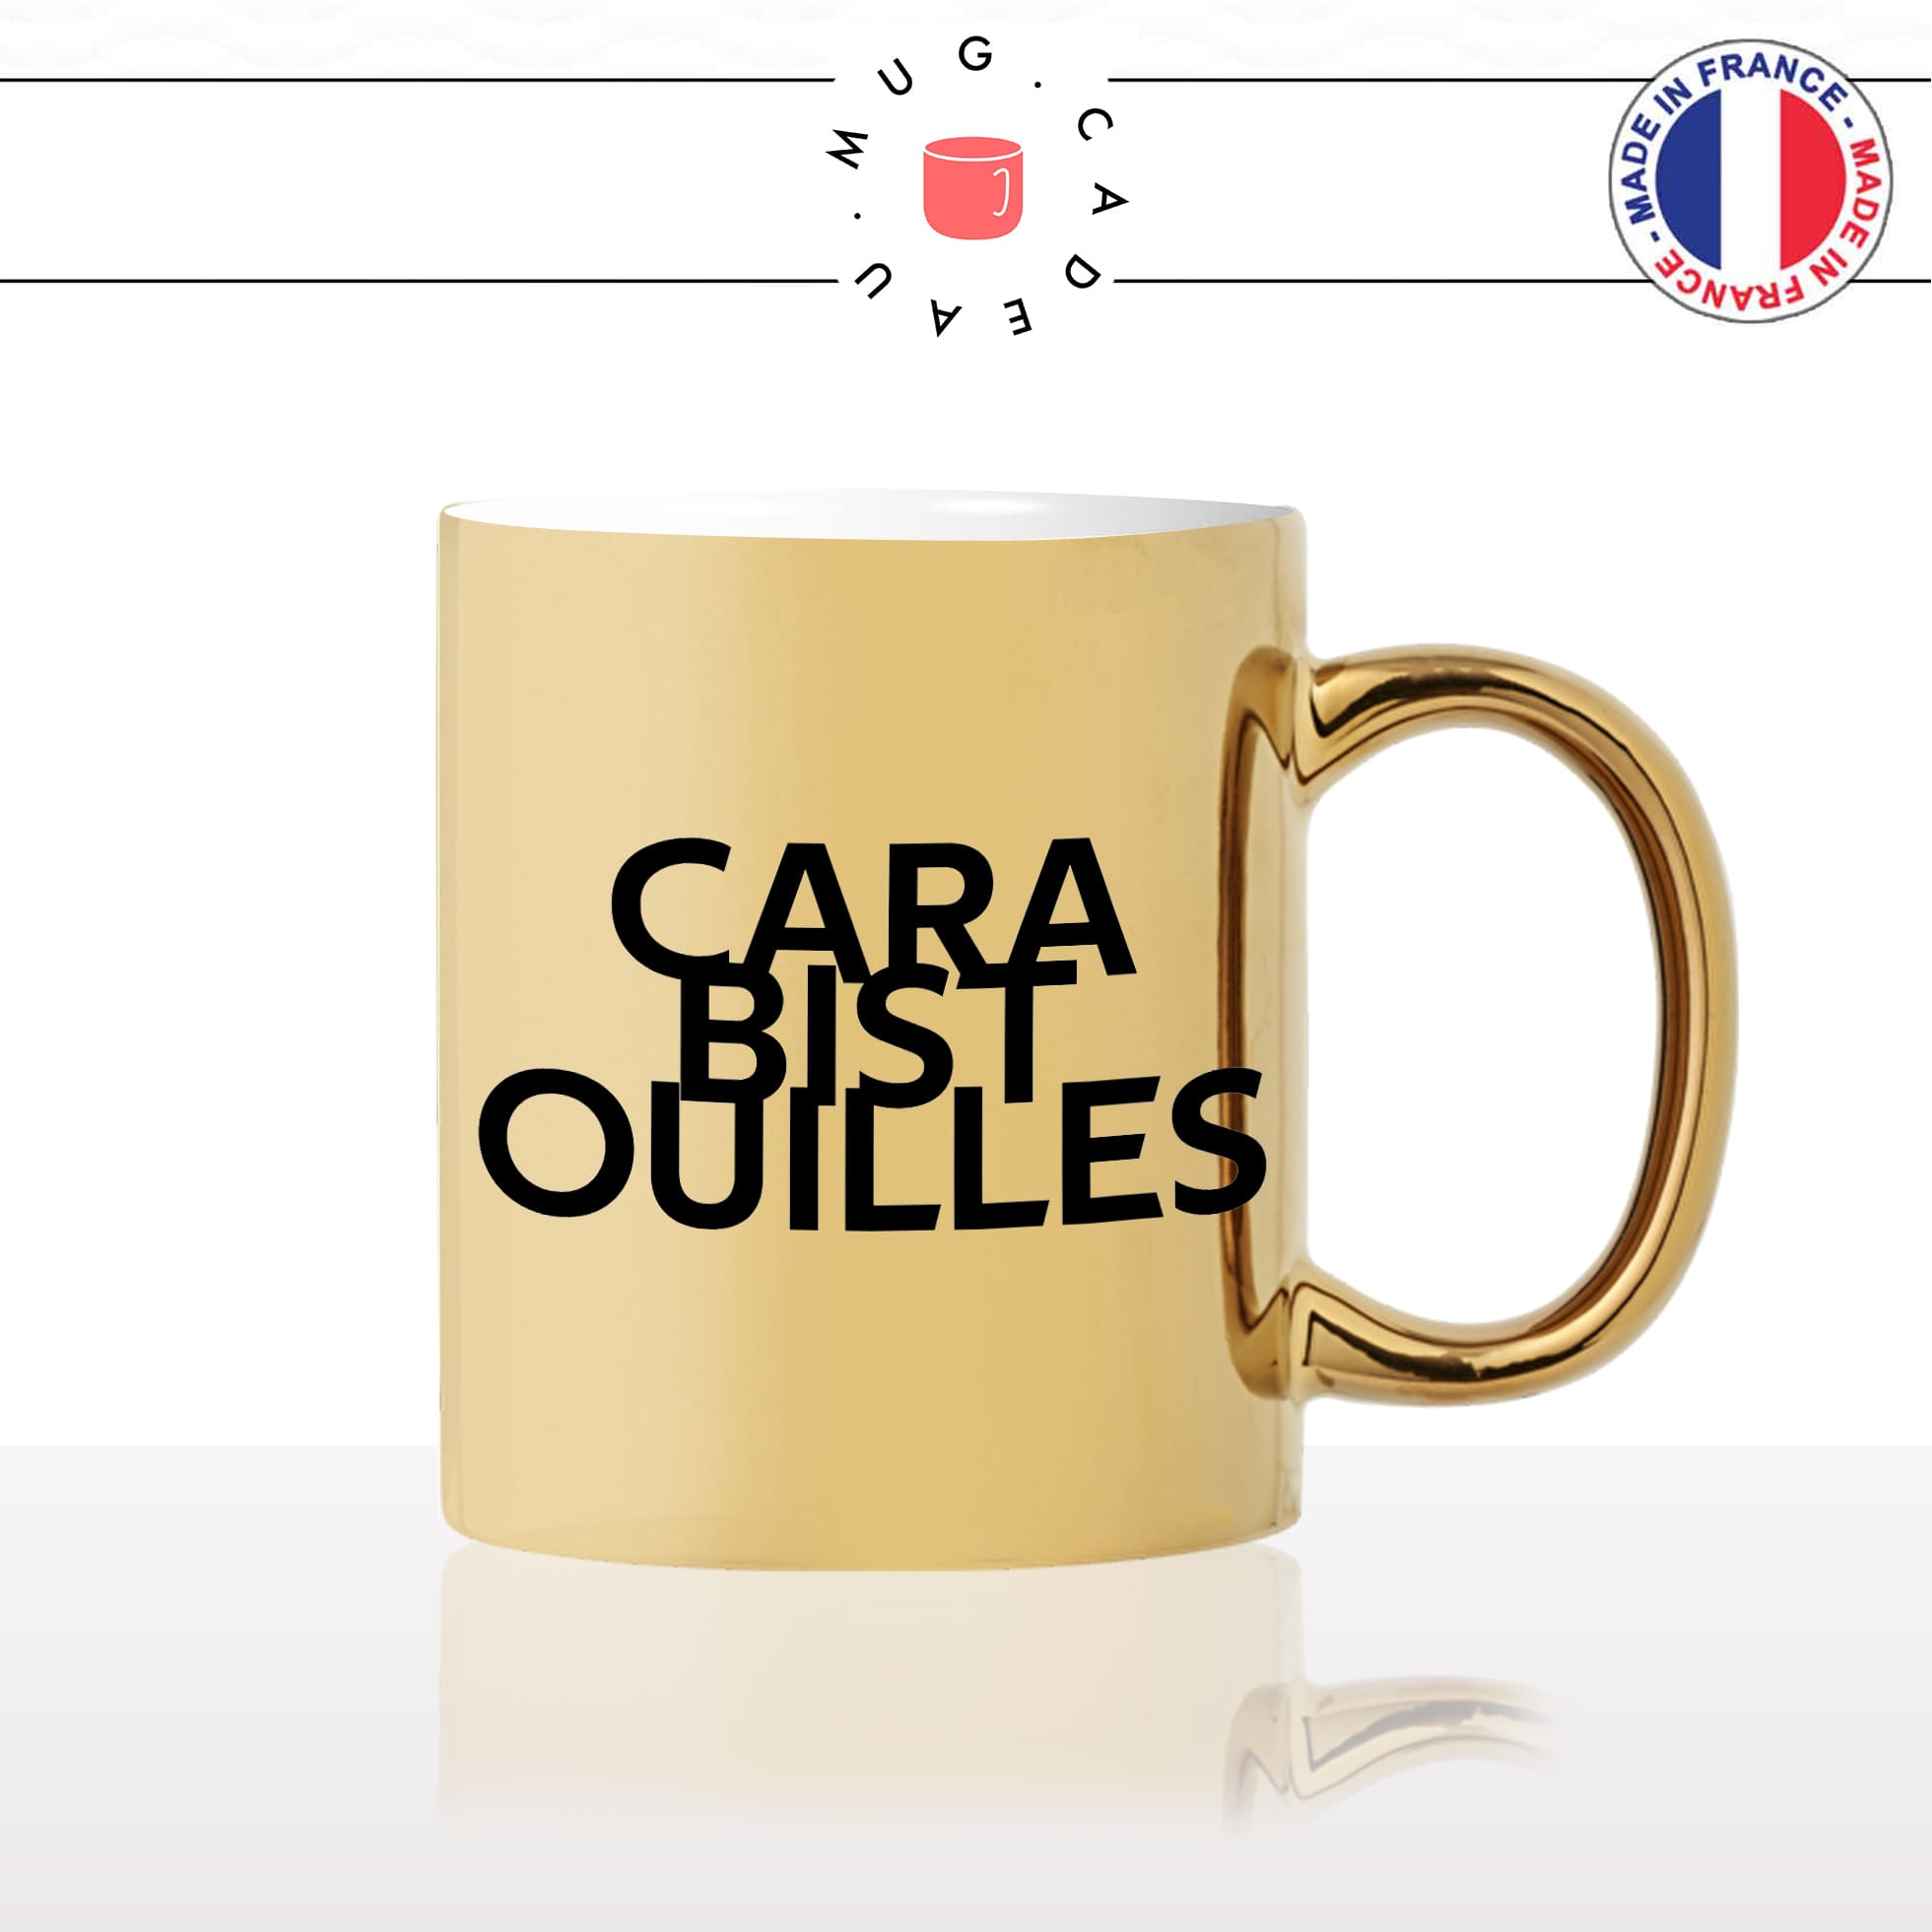 mug-tasse-or-doré-gold-carabistouilles-expressions-francaise-betises-conneries-meme-internet-humour-fun-idée-cadeau-originale-cool2